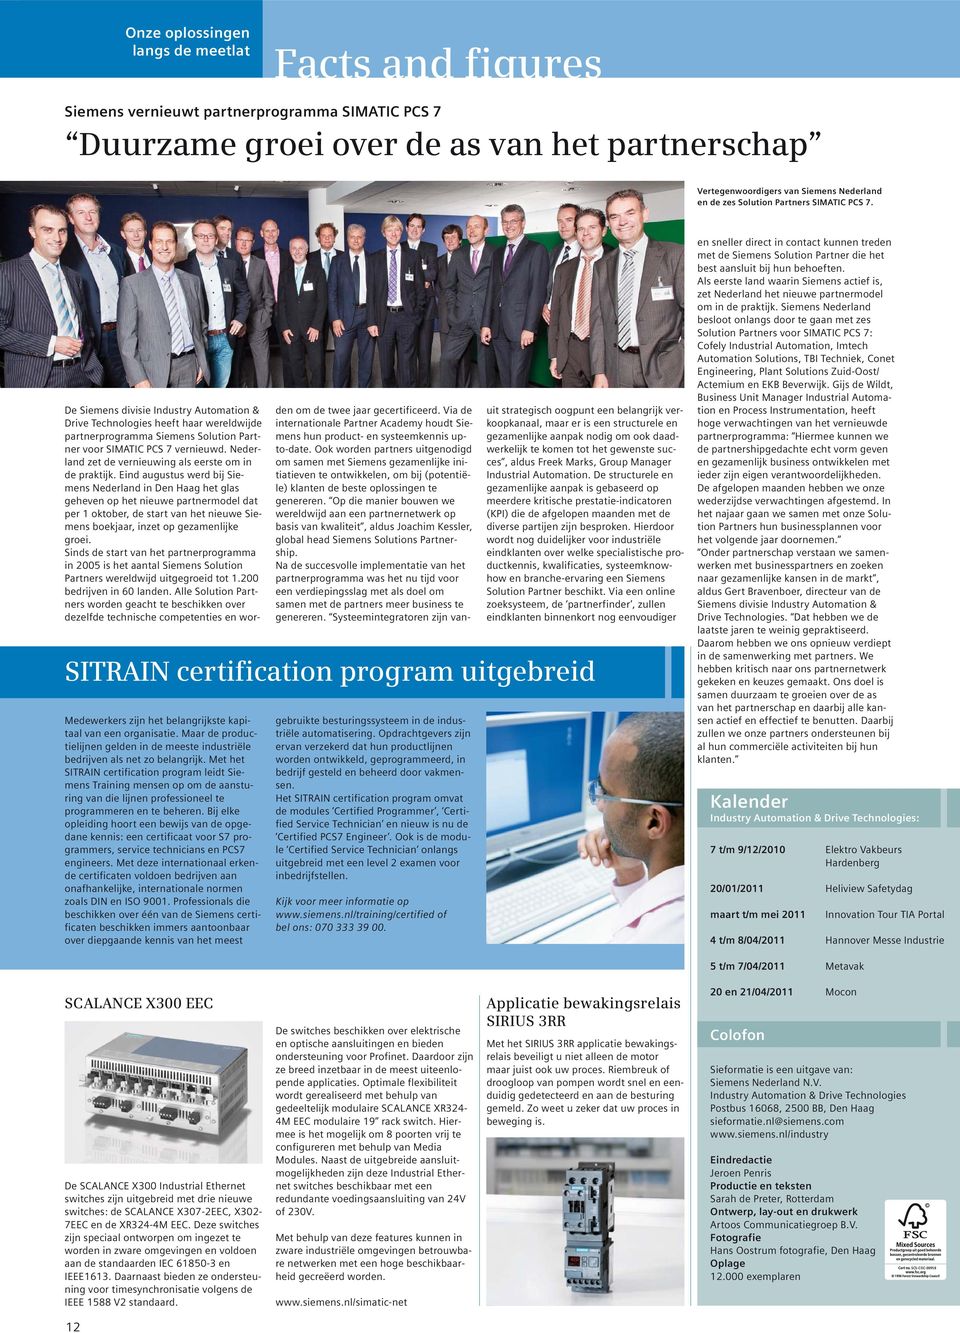 Met het SITRAIN certification program leidt Siemens Training mensen op om de aansturing van die lijnen professioneel te programmeren en te beheren.